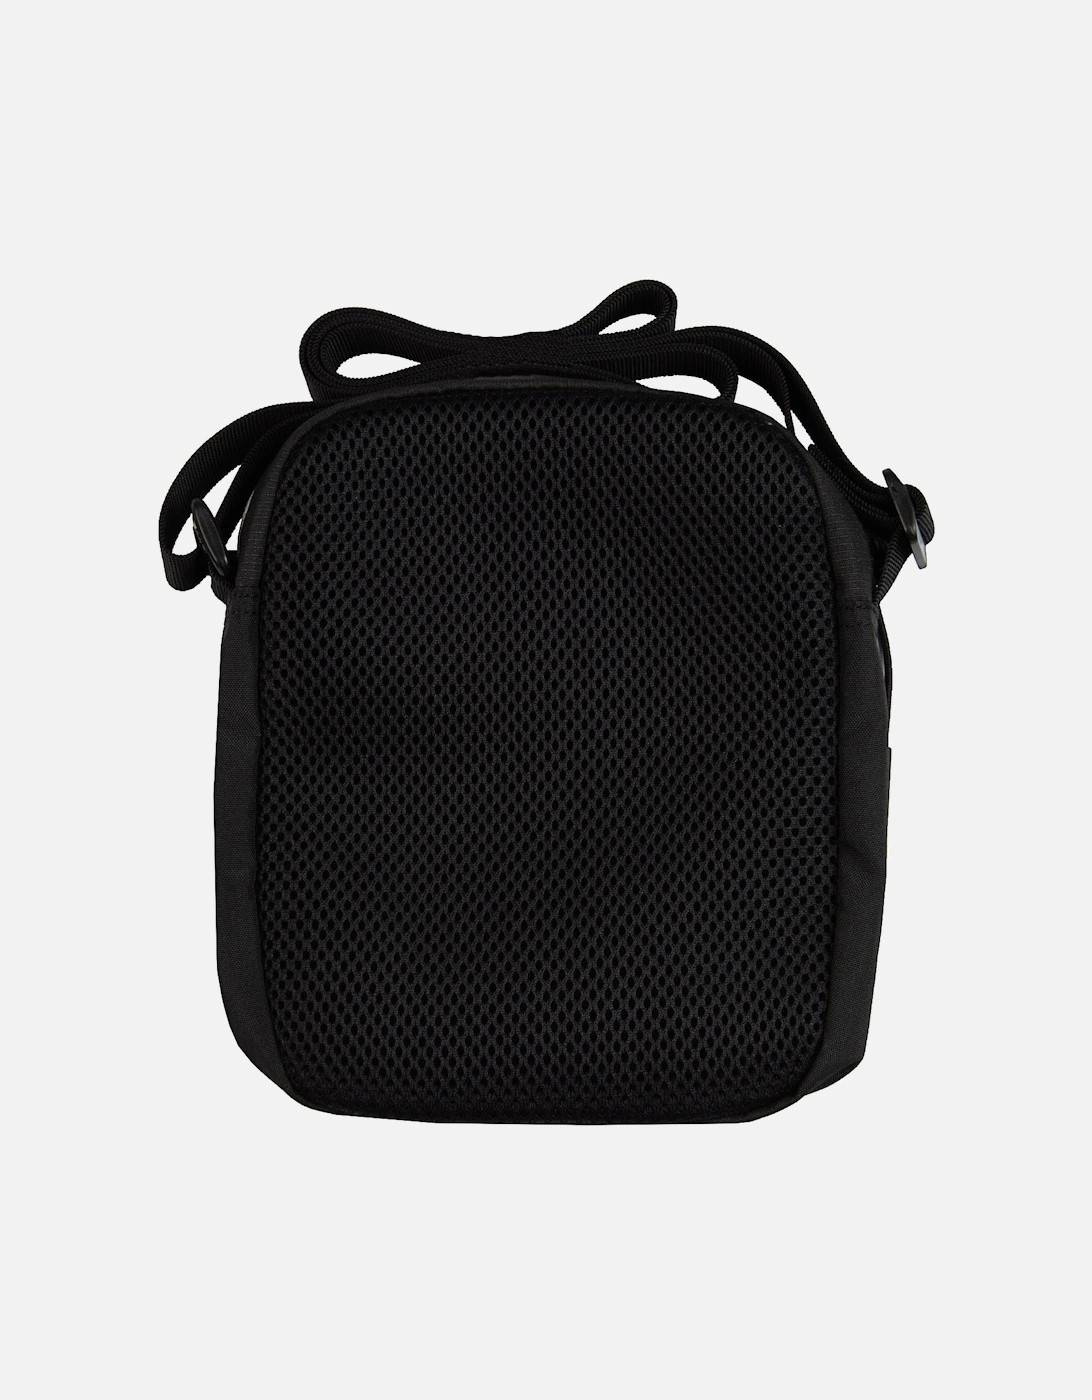 Armani Train Core Small Pouch Bag (Black/White)